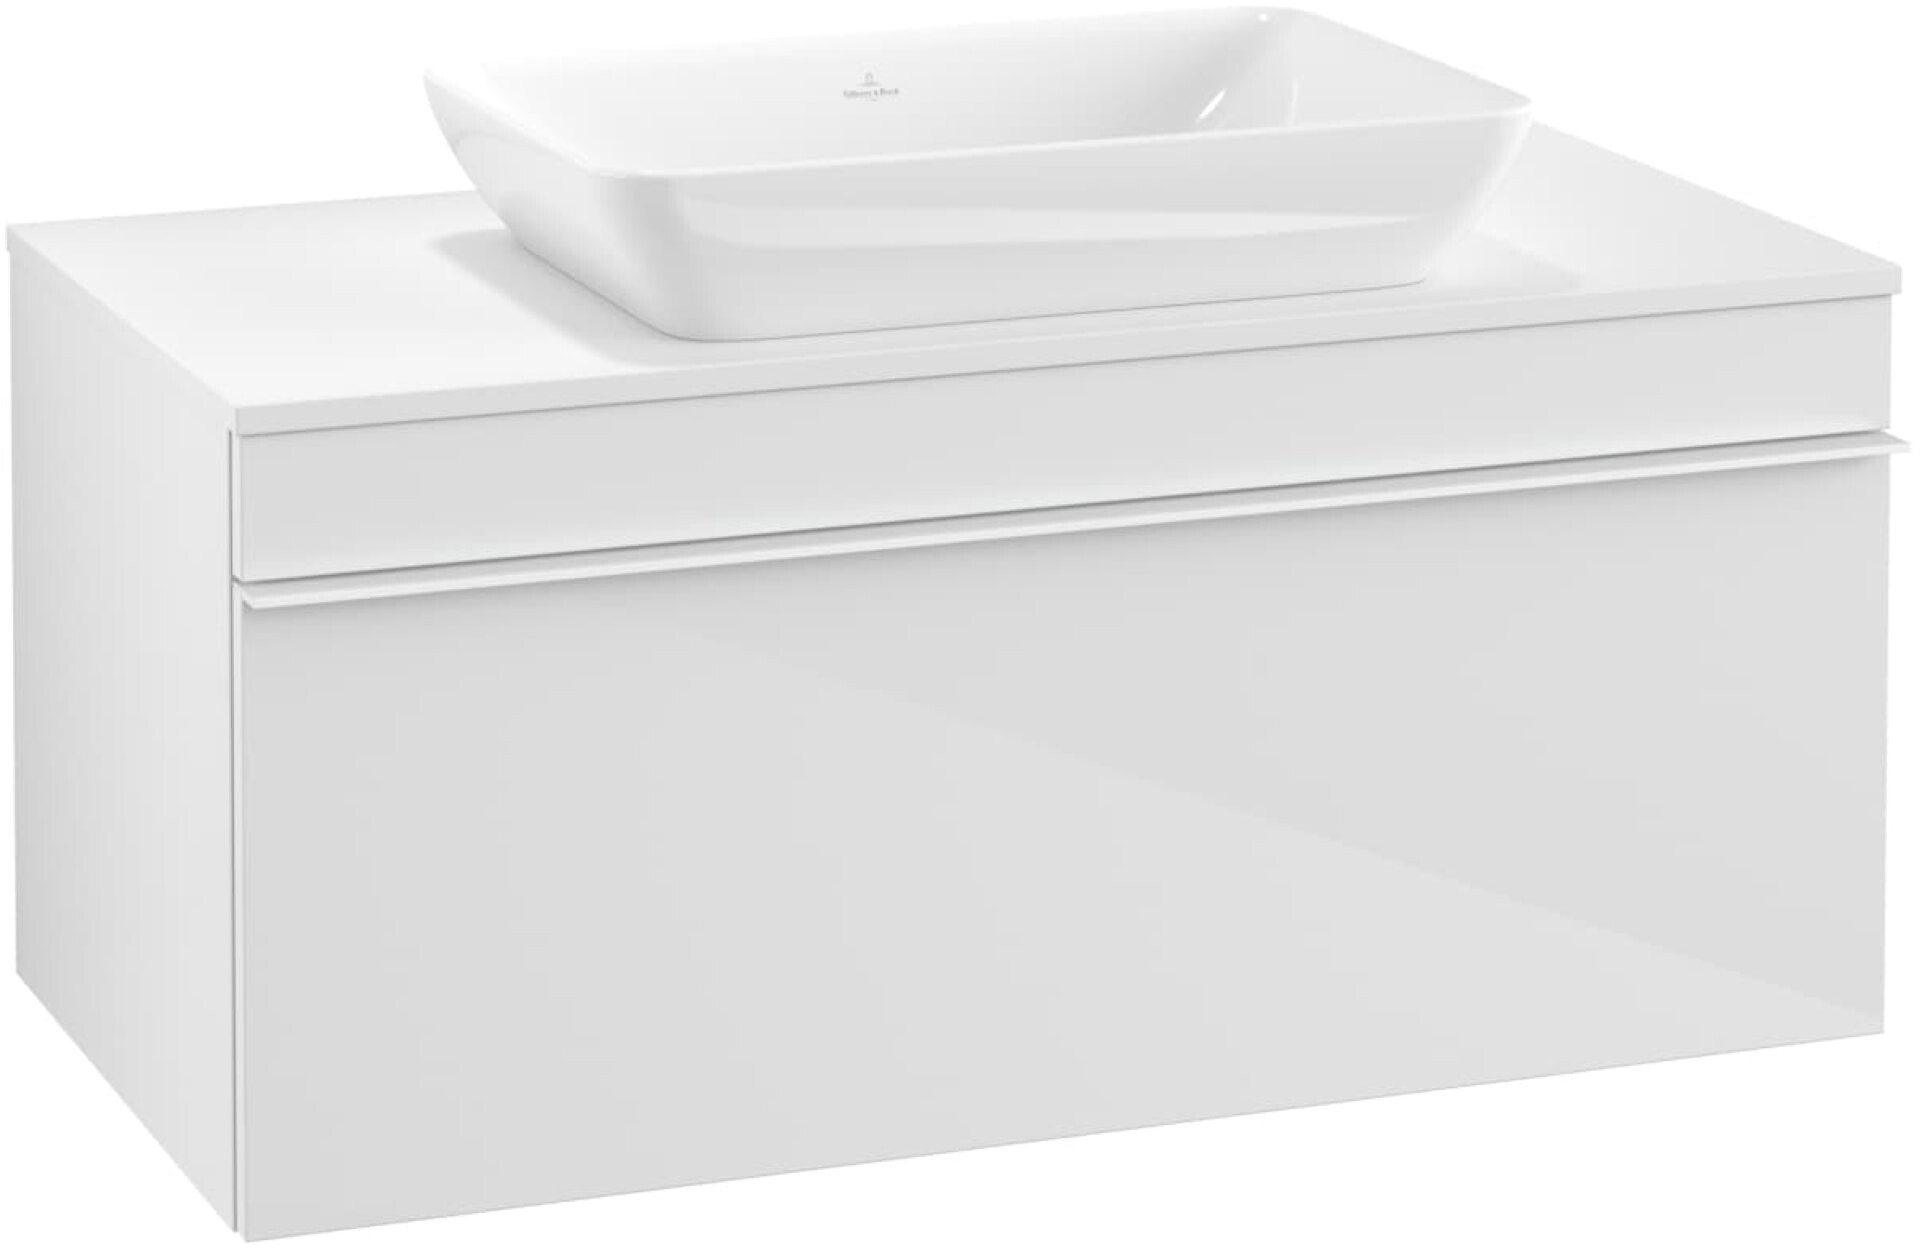 Villeroy & Boch VENTICELLO Waschtischunterschrank 95 cm breit, Weiß, Griff Weiß